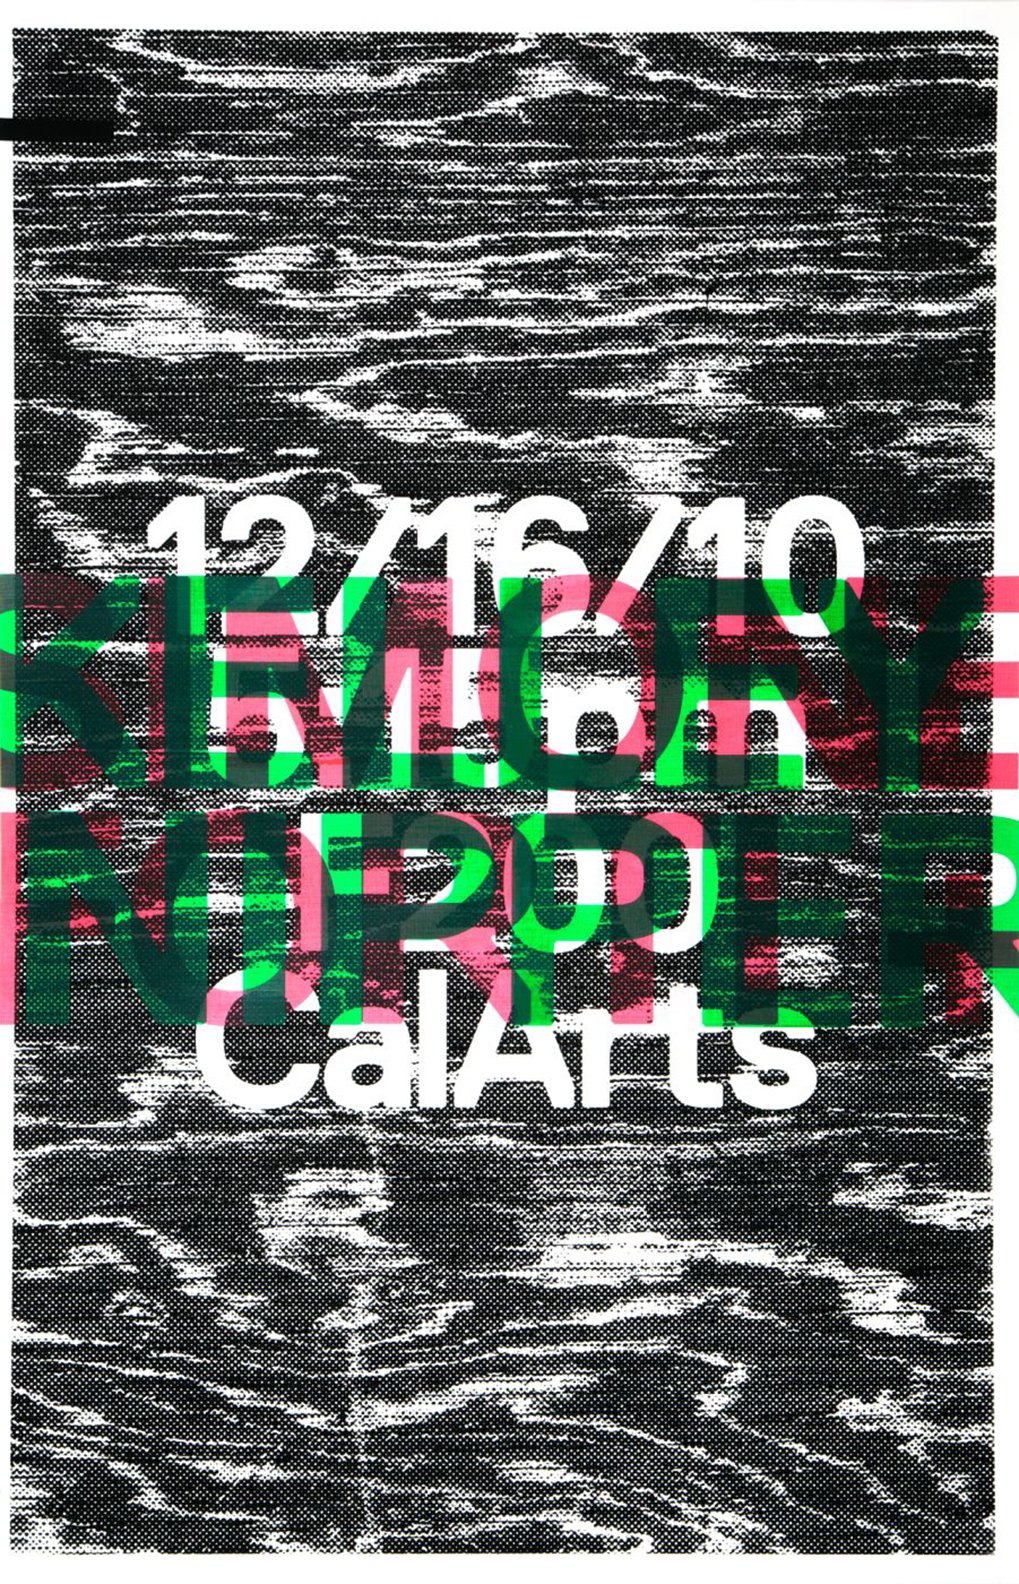 Forti:Nipper CalArts Poster 2010.jpg